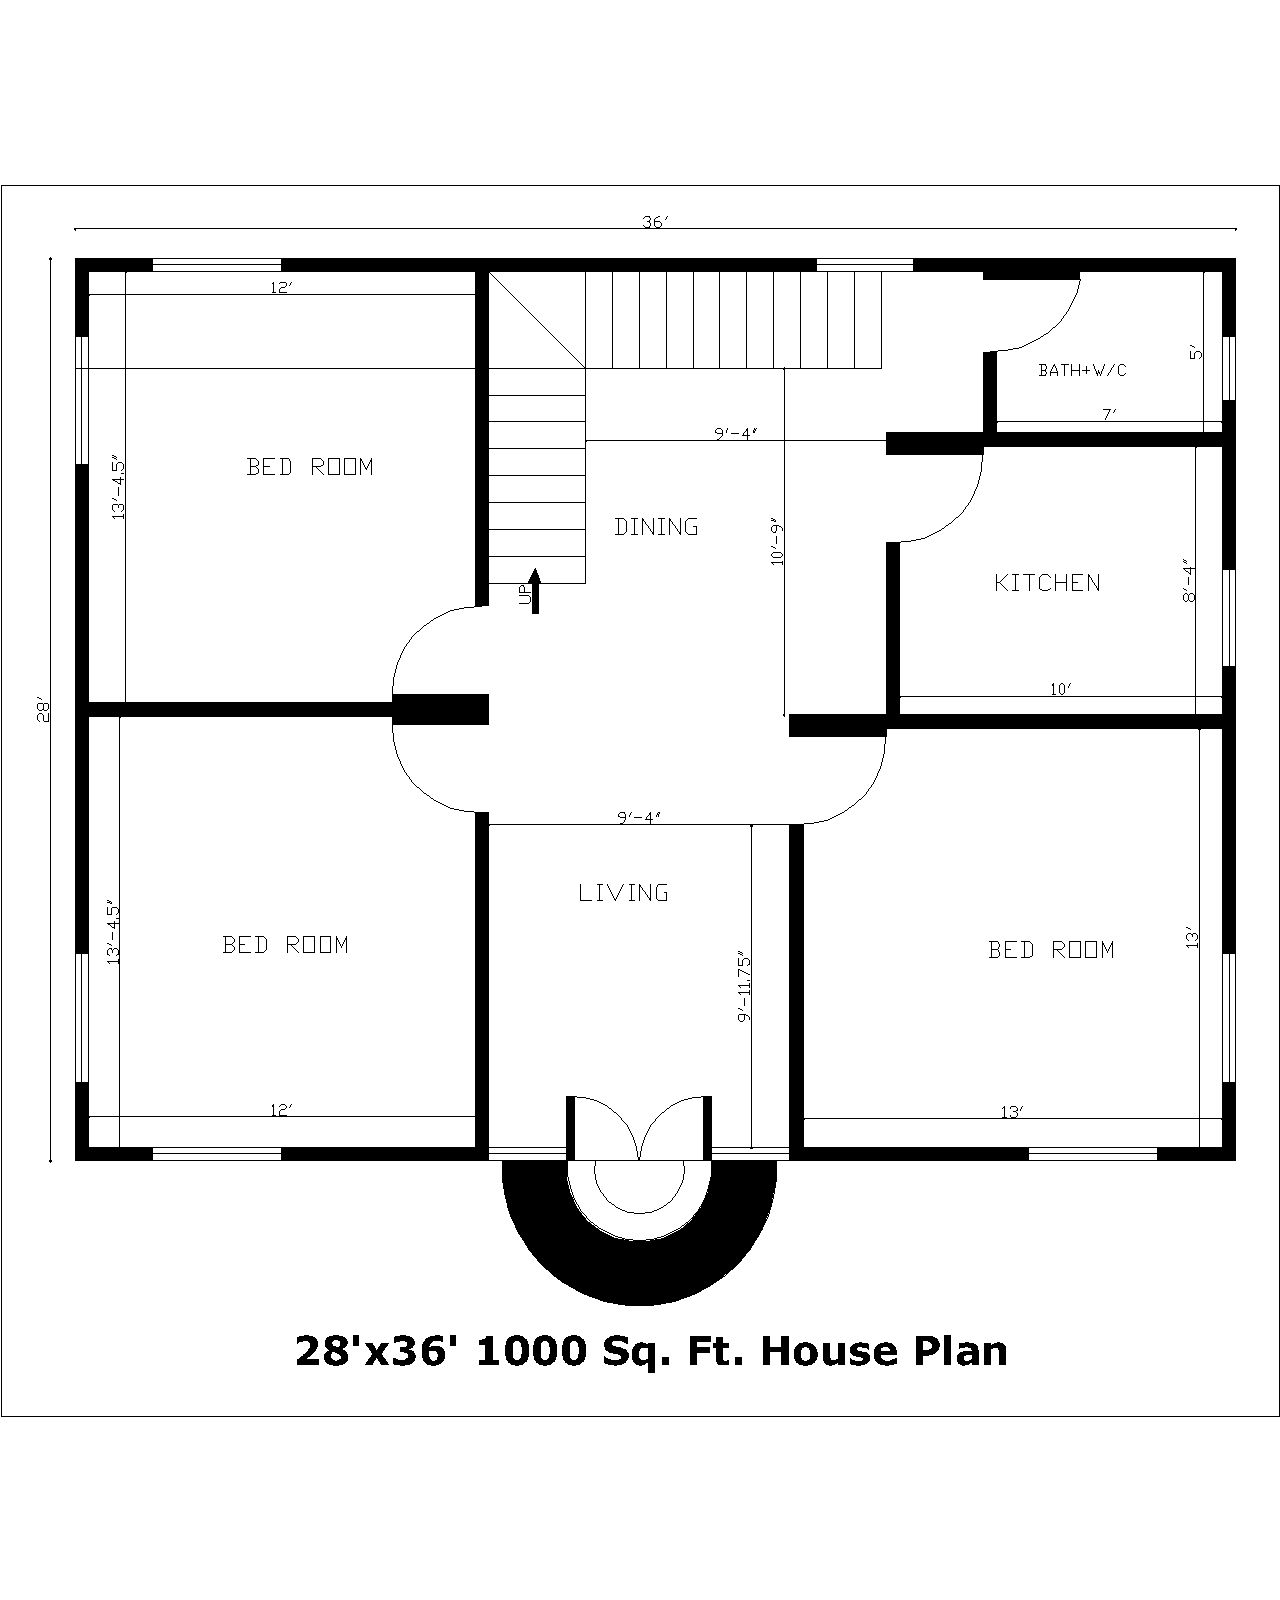 28'x36' 1000 Sq. Ft. House Plan | 28'x36' 1000 Sq. Ft. Gharka Naksha